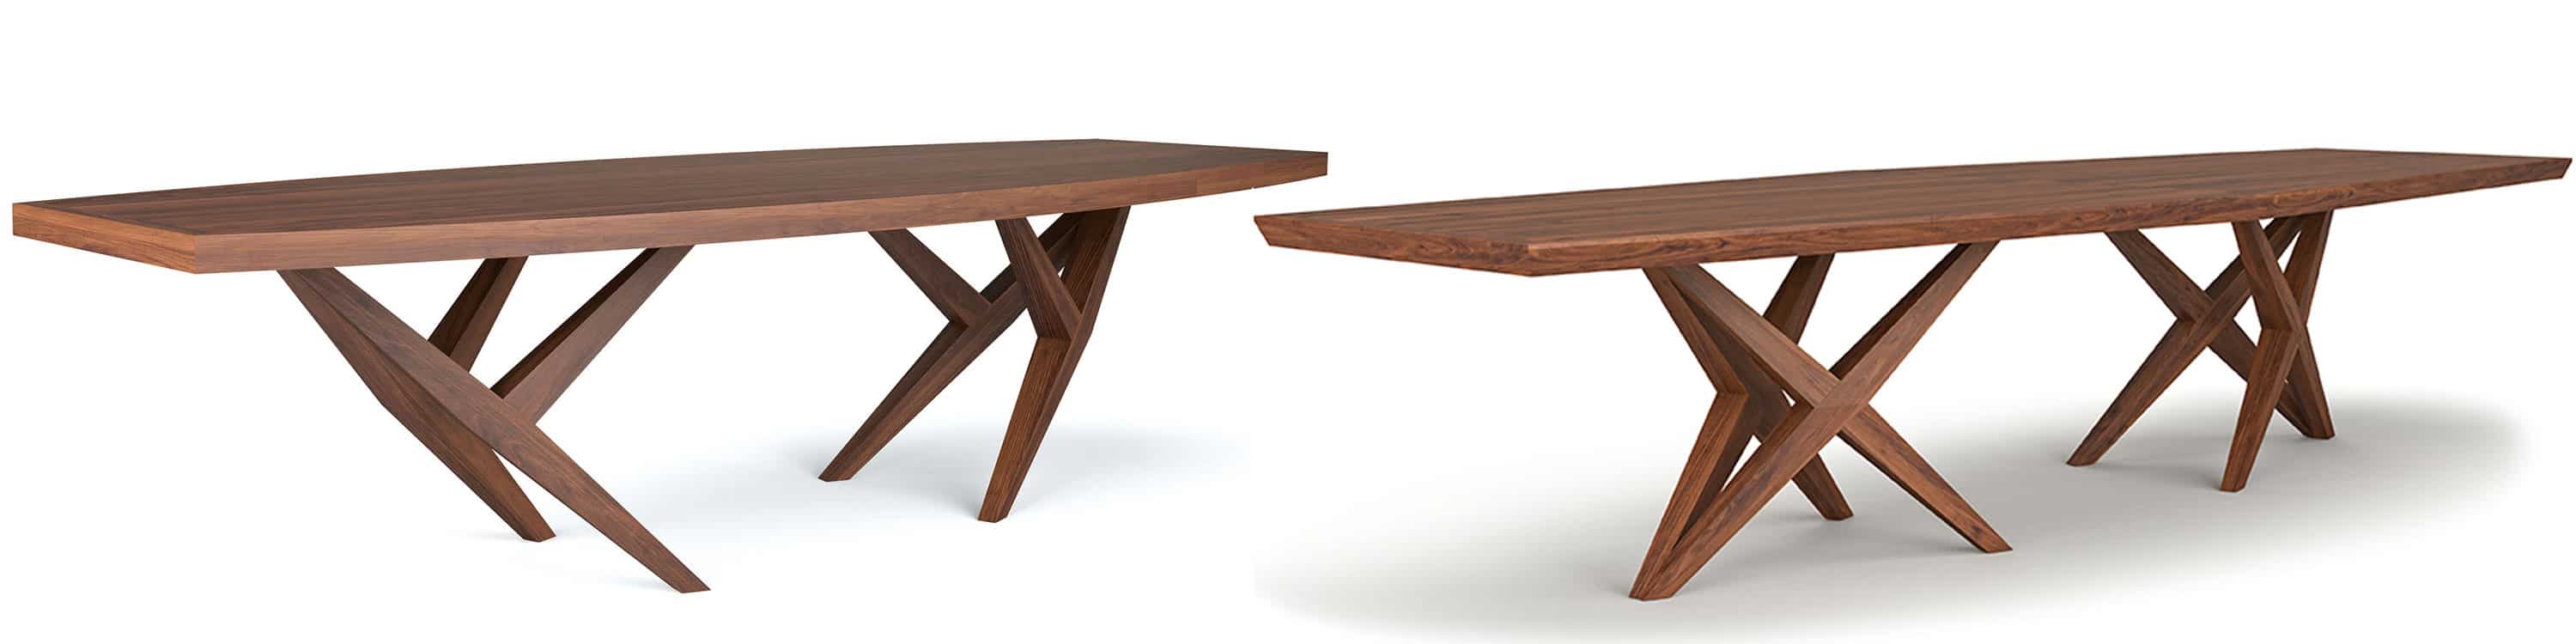 Table design en bois massif noyer